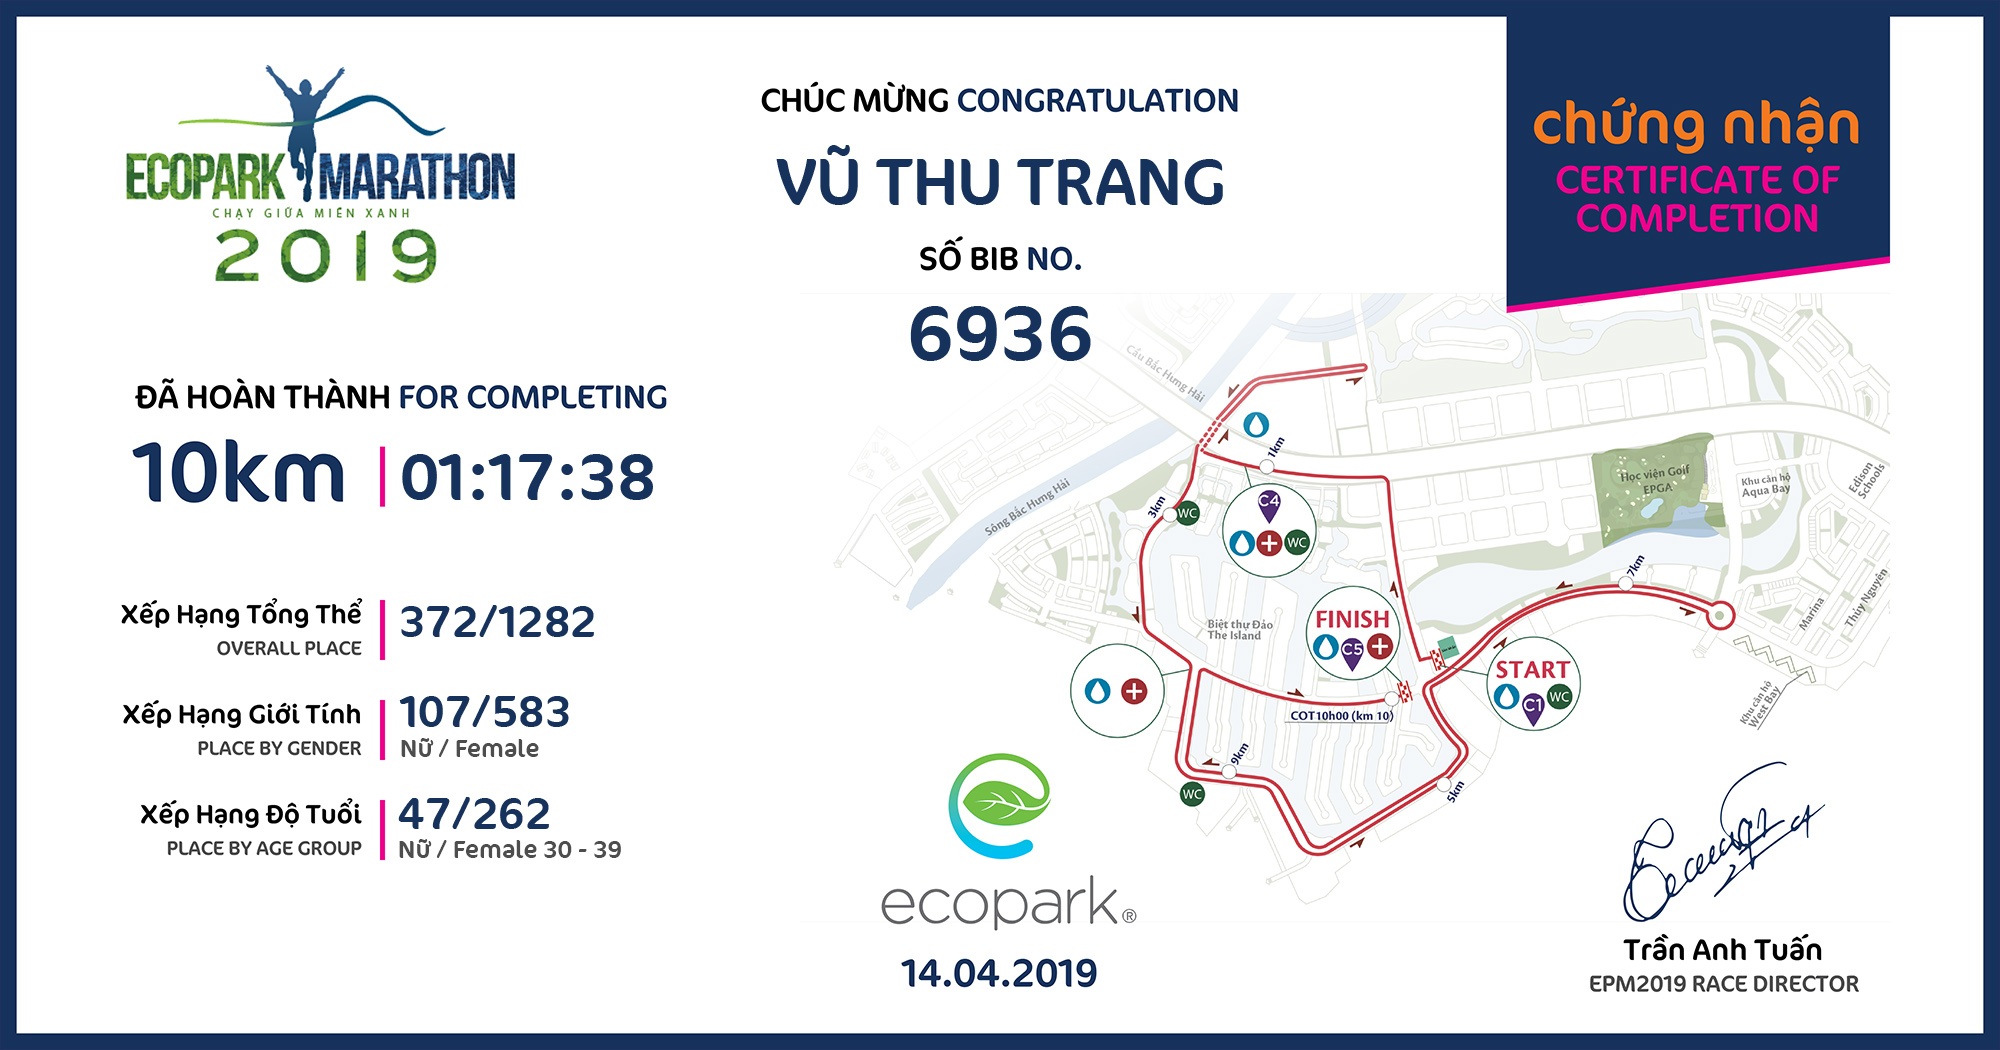 6936 - Vũ Thu Trang